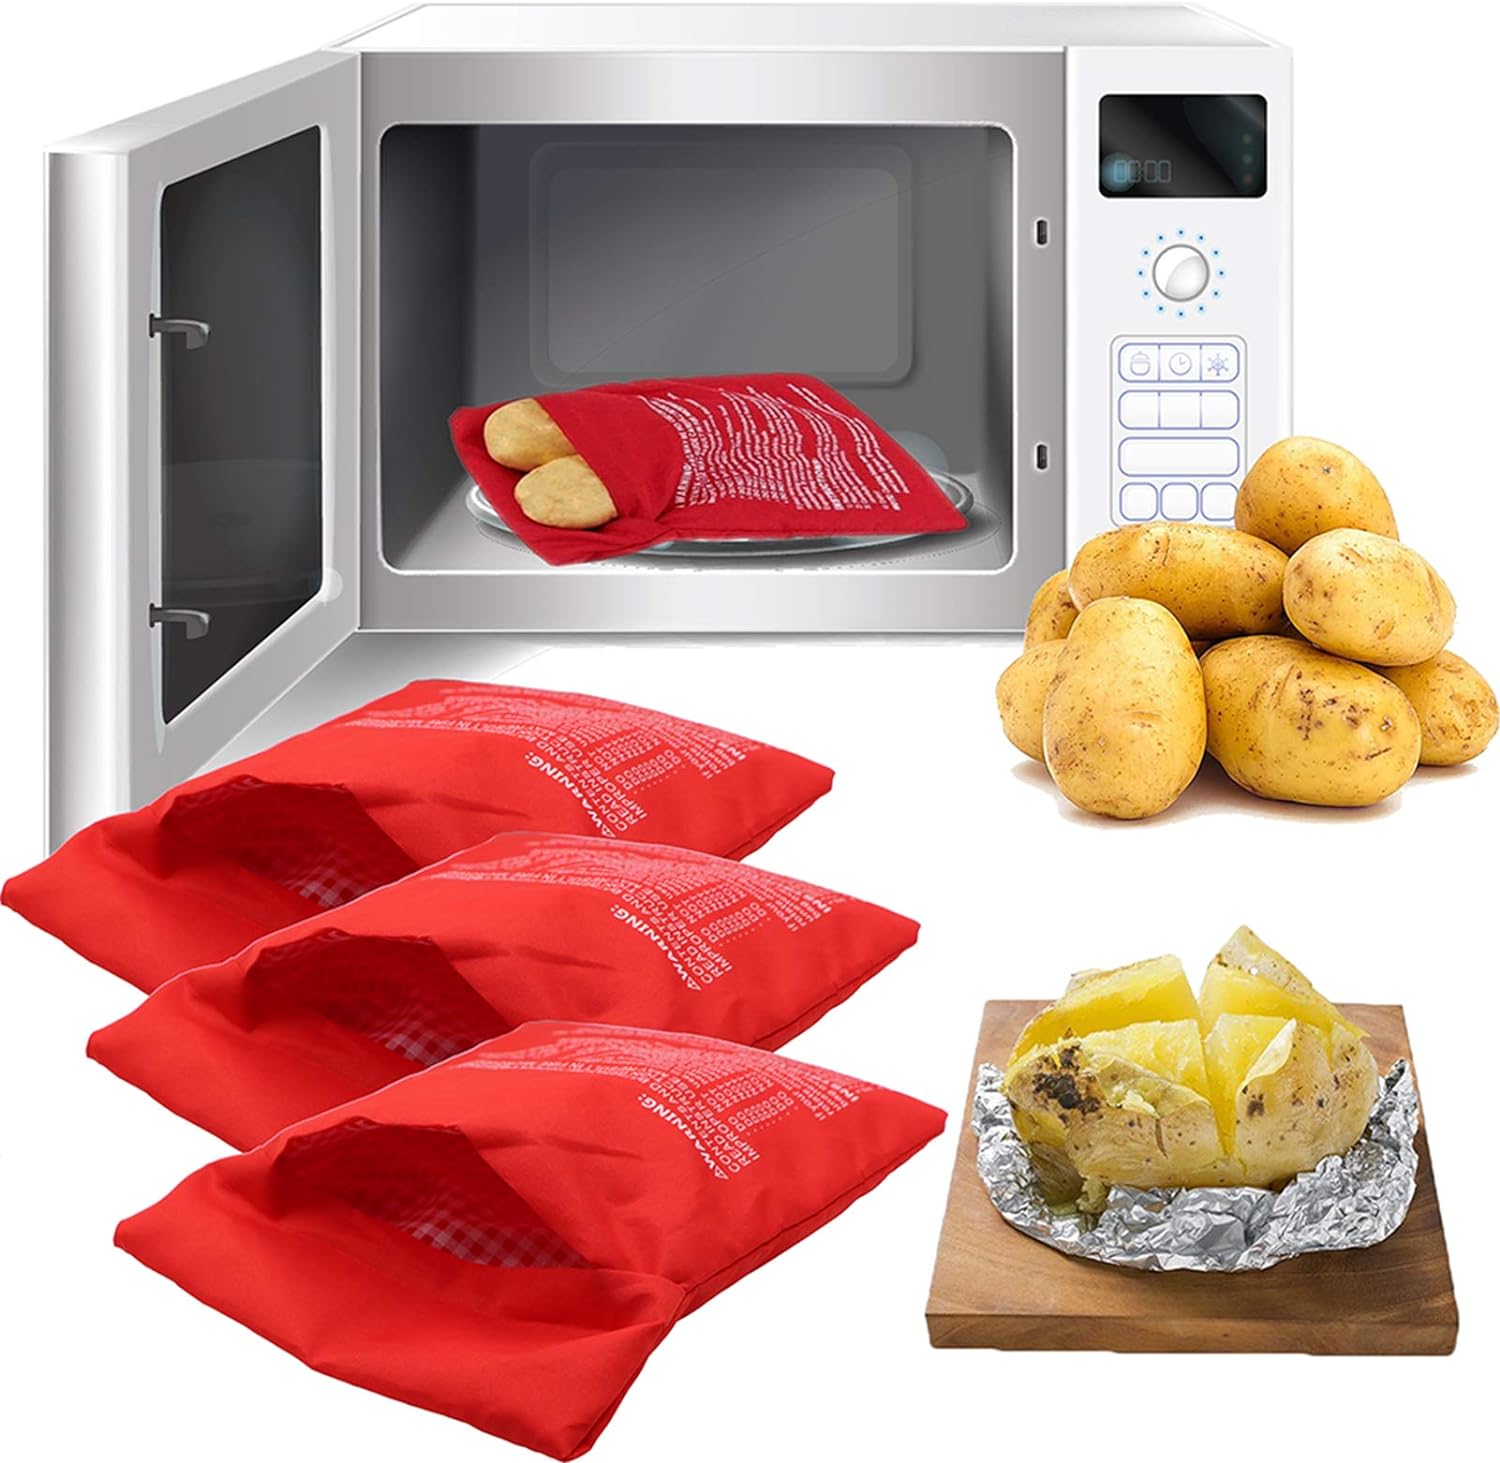 microwave potato bag